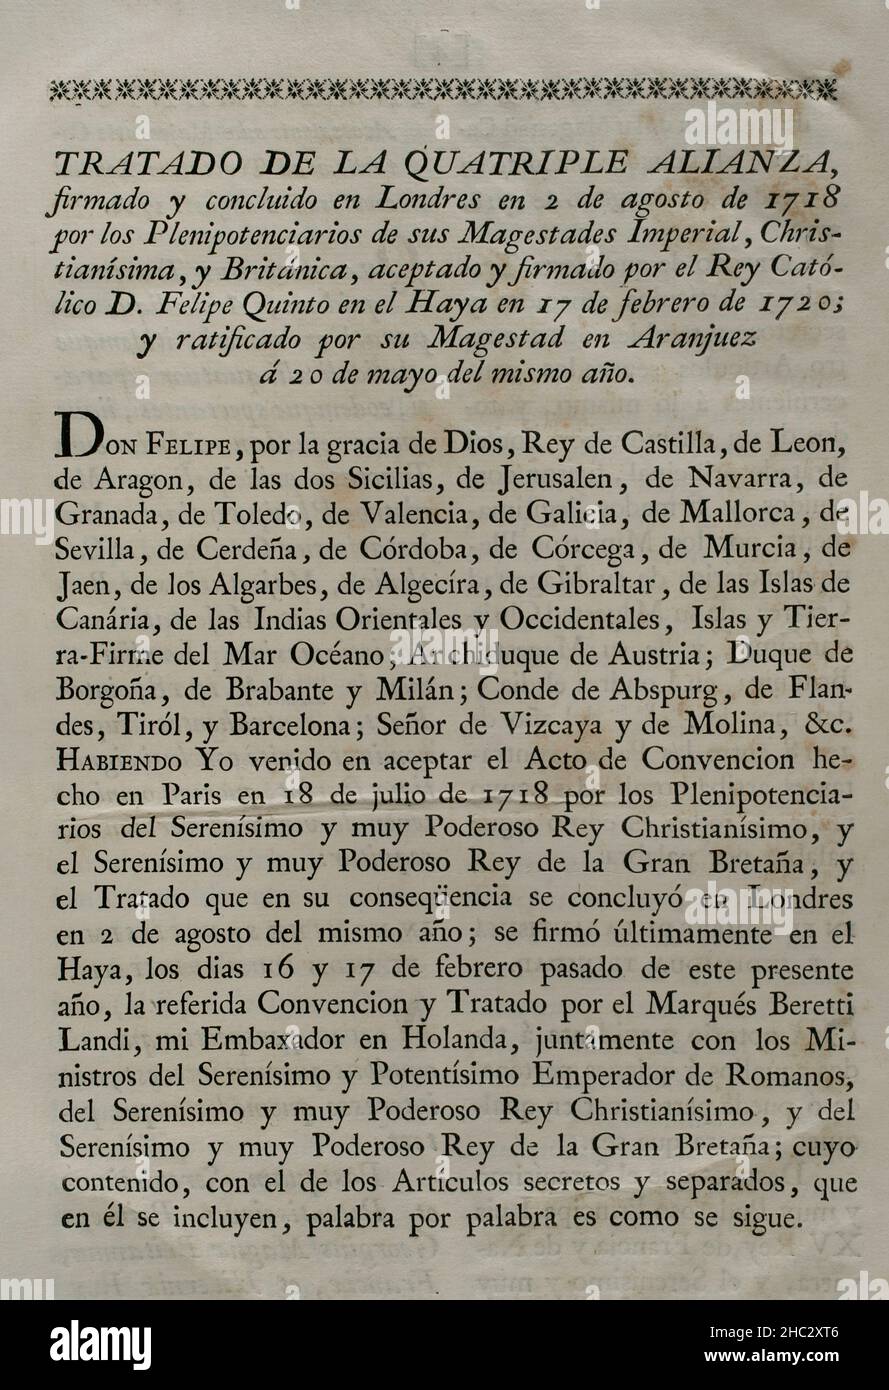 Vierfache Allianz. Gegründet am 2. August 1718 in London durch das Heilige Römische Reich, die Vereinigten Provinzen der Niederlande, Frankreich und Großbritannien, Mit dem Ziel, eine Koalition als Reaktion auf die spanische Kriegslust zu bilden, die sich weigerte, den Vertrag von Utrecht von 1713 in Bezug auf die ehemaligen spanischen Gebiete in Italien und den Niederlanden einzuhalten. Mit der Unterzeichnung des "Vertrags von Den Haag" (17. Februar 1720) trat Spanien dem Vertrag der Viererallianz bei, der eine Teilung umstrittener Gebiete neu organisierte. Dieser Vertrag wurde am 20. Mai dieses Jahres von König Philipp V. von Spanien in Aranjuez ratifiziert Stockfoto